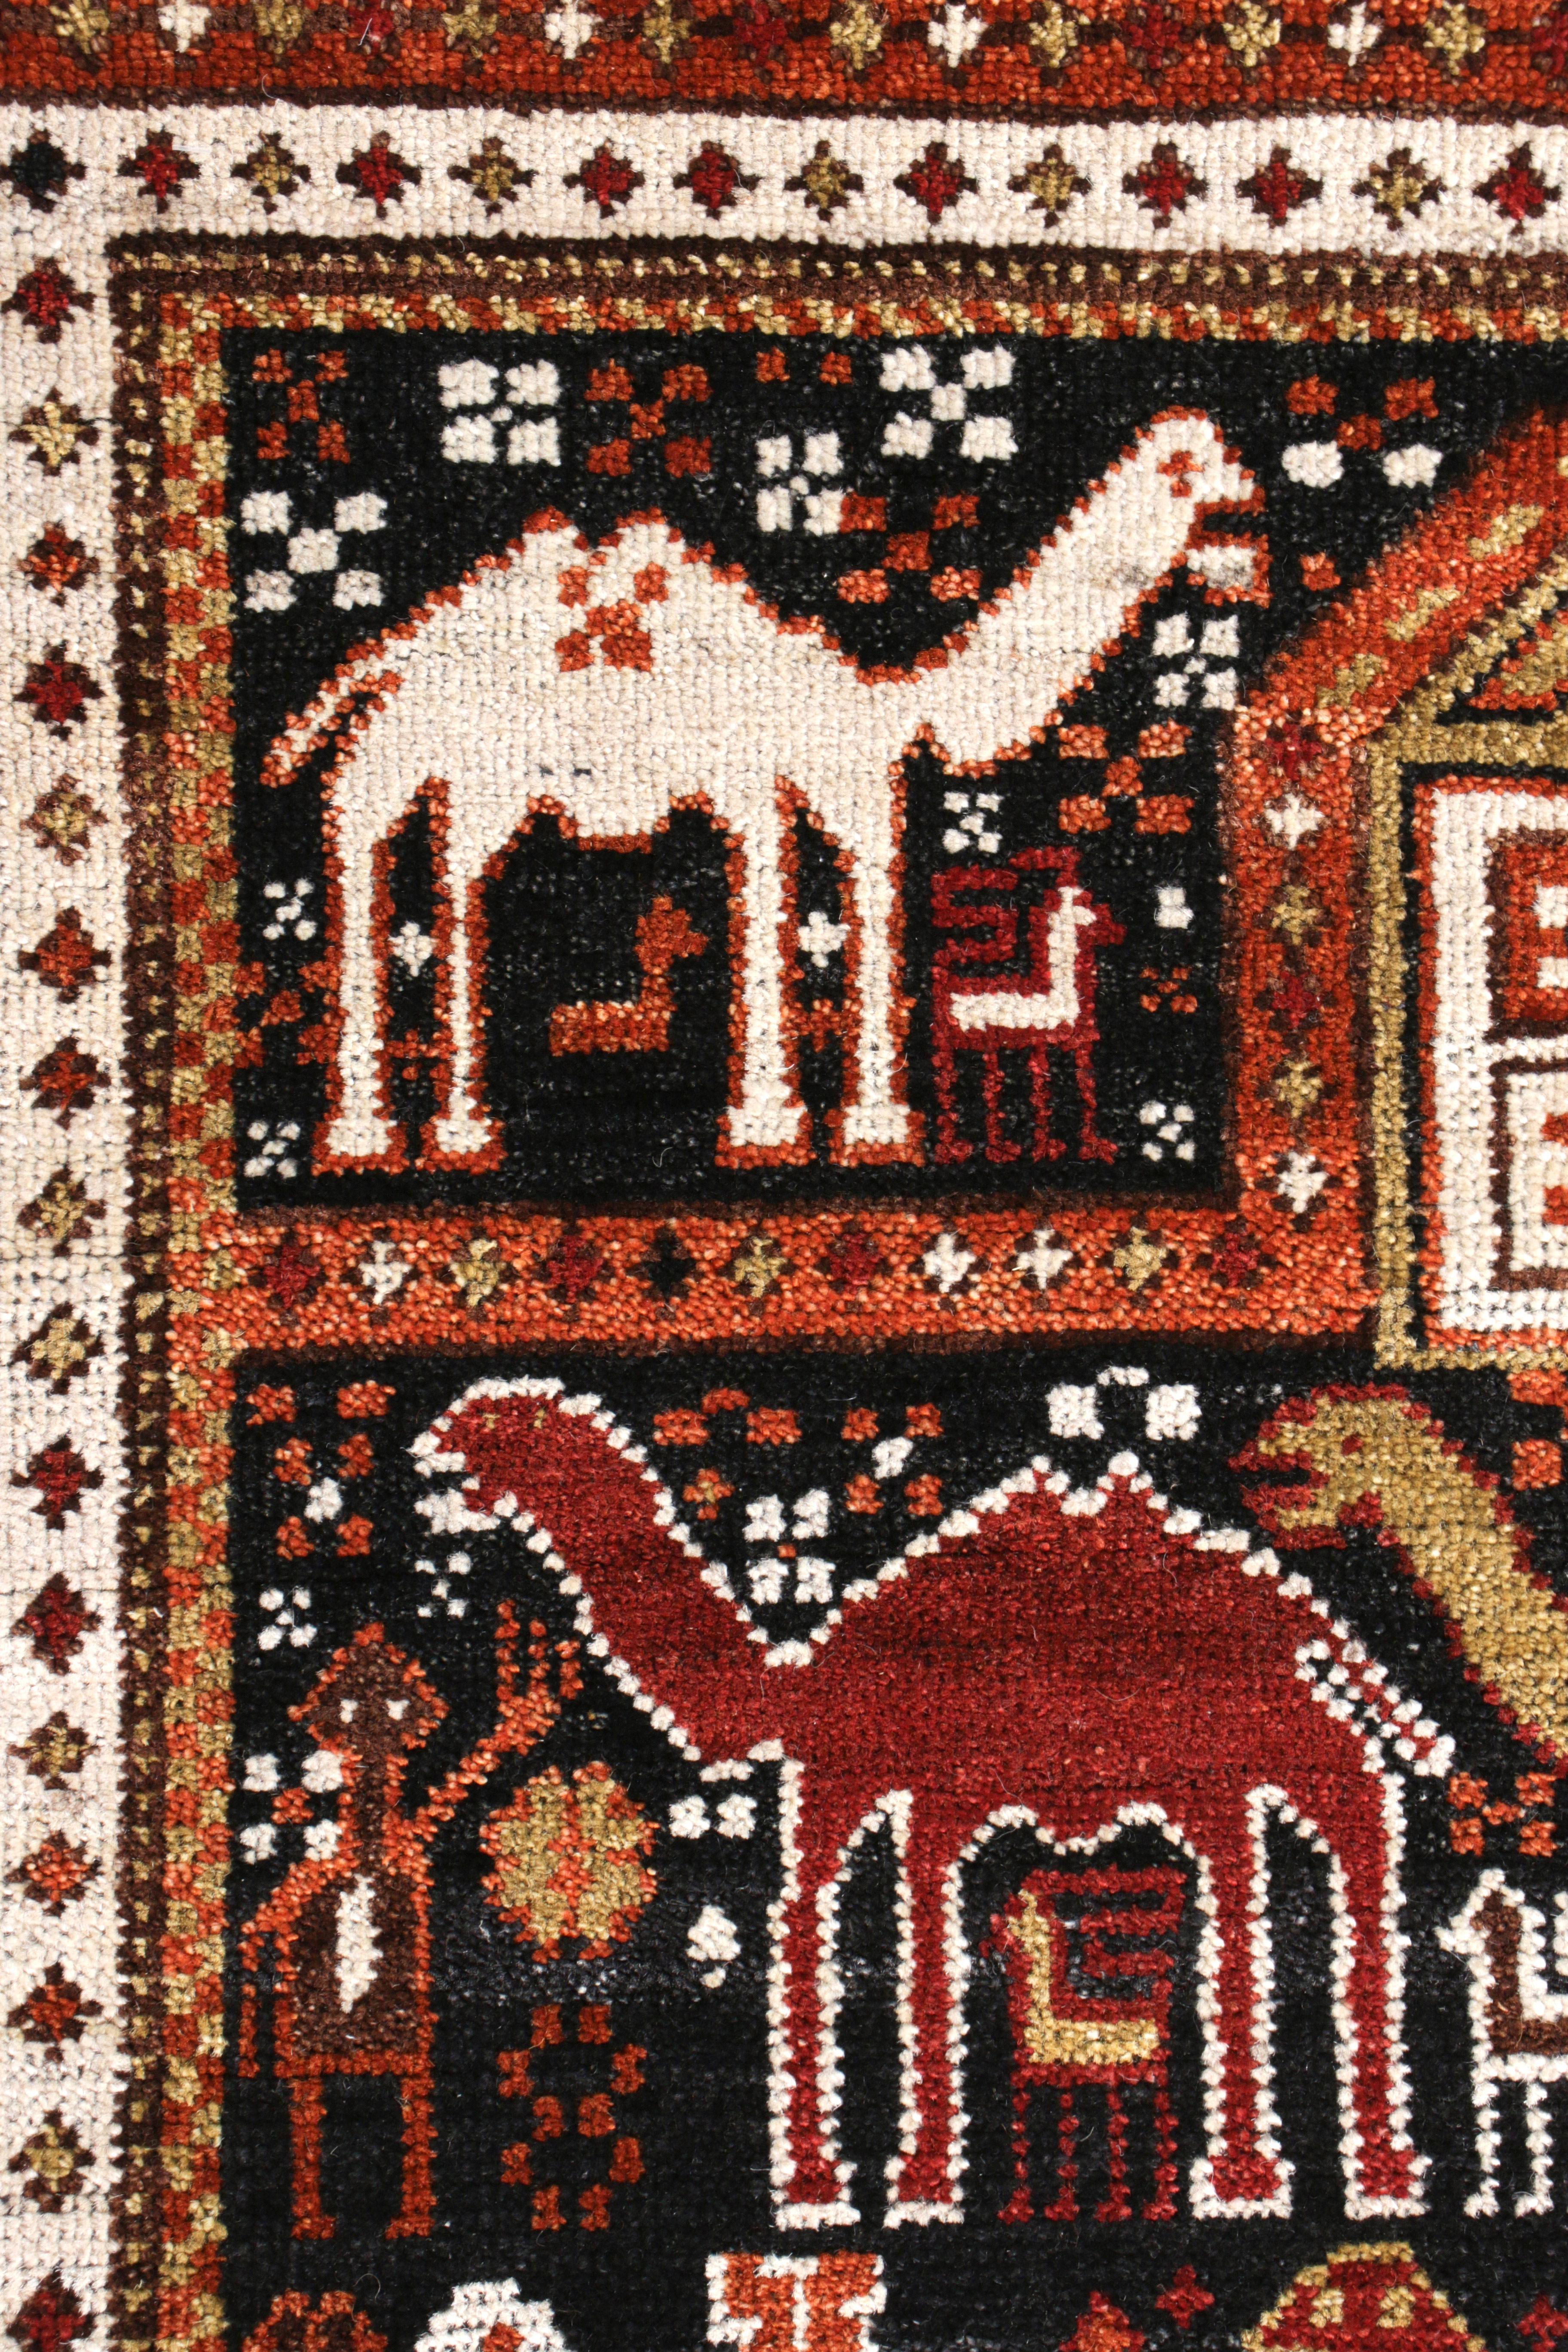 Indian Rug & Kilim's Classic Camel Motif Custom Rug in Orange Brown Caucasian Pattern